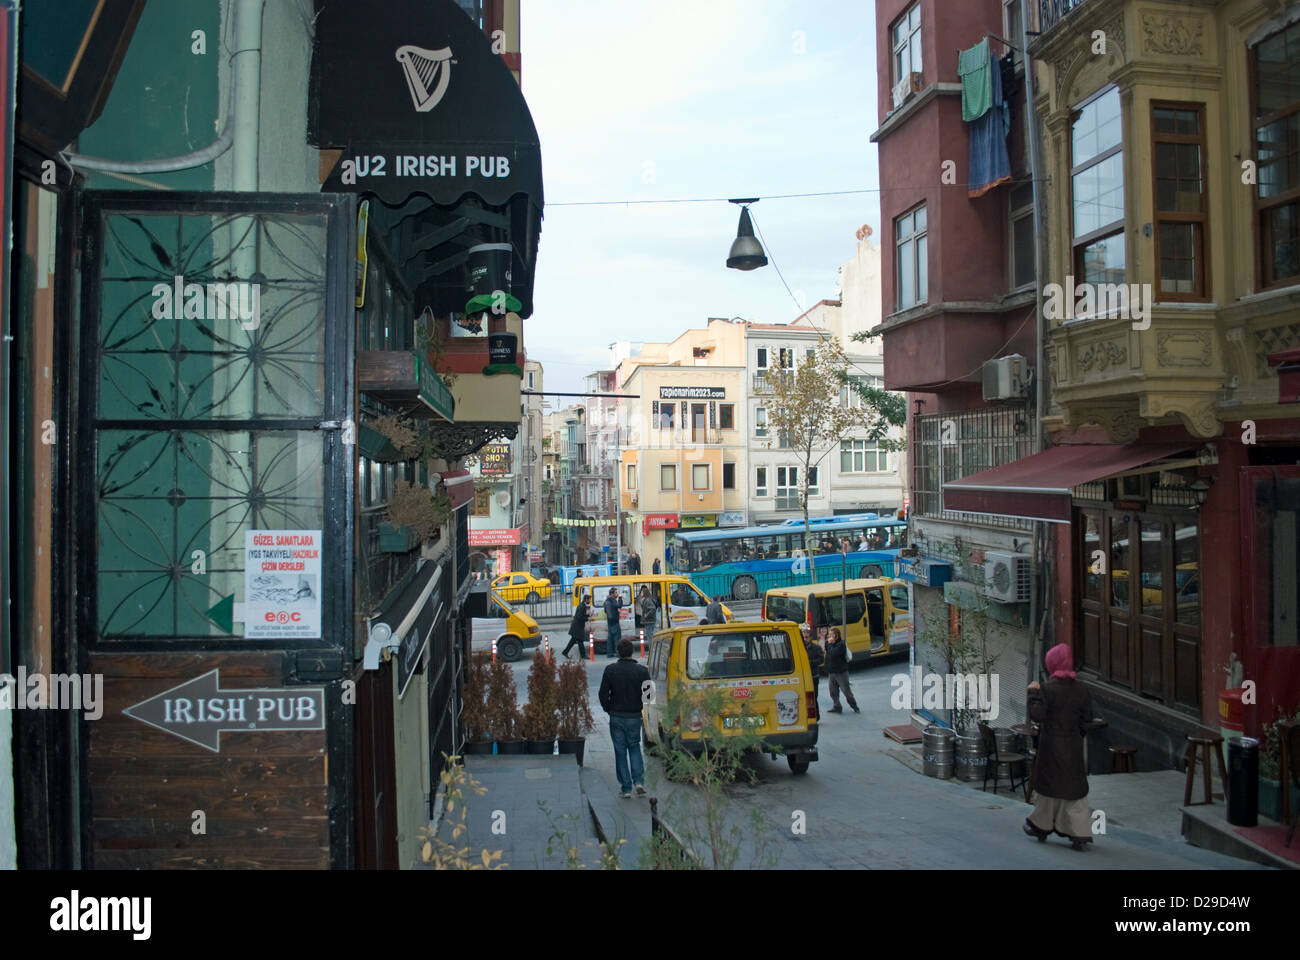 La U2 'temática' pub irlandés que sirve cerveza Guinness en Estambul. Frecuentado por expatriados y locales. Foto de stock